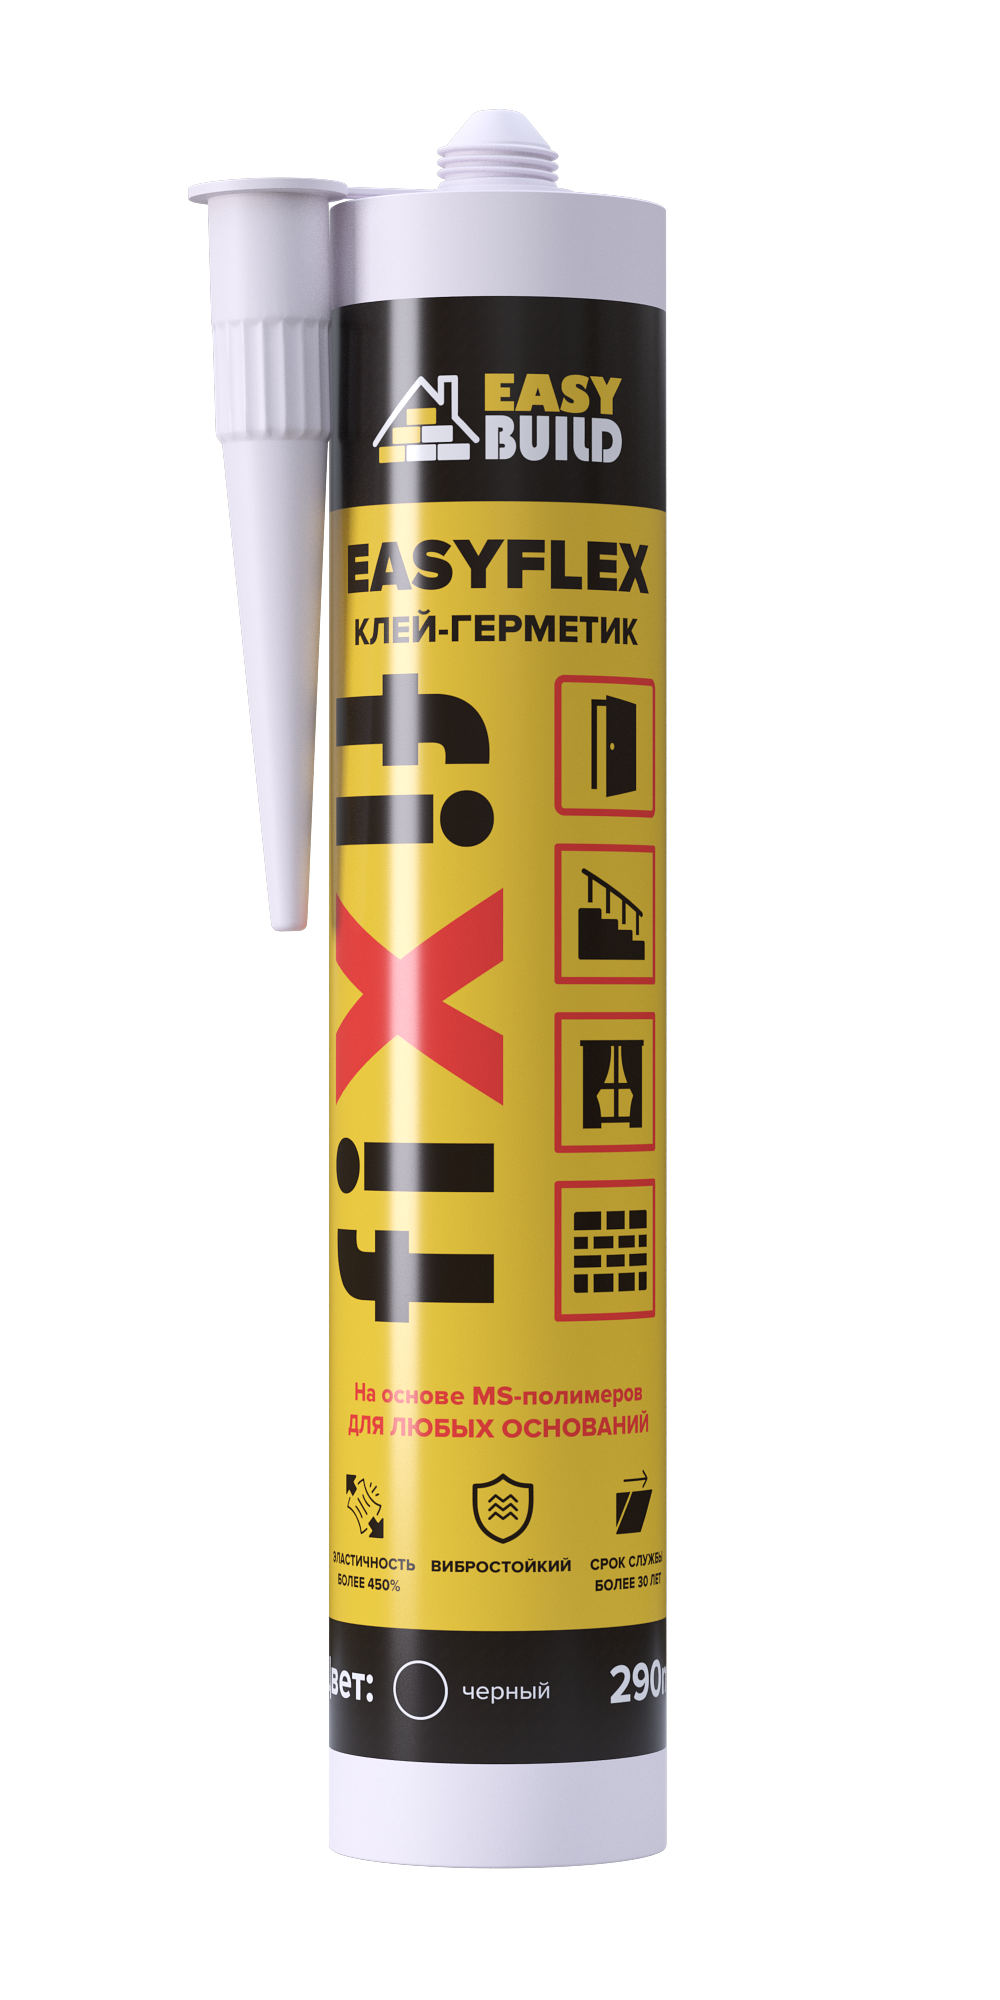 Клей-герметик мультифункциональный Easyflex Fix черный